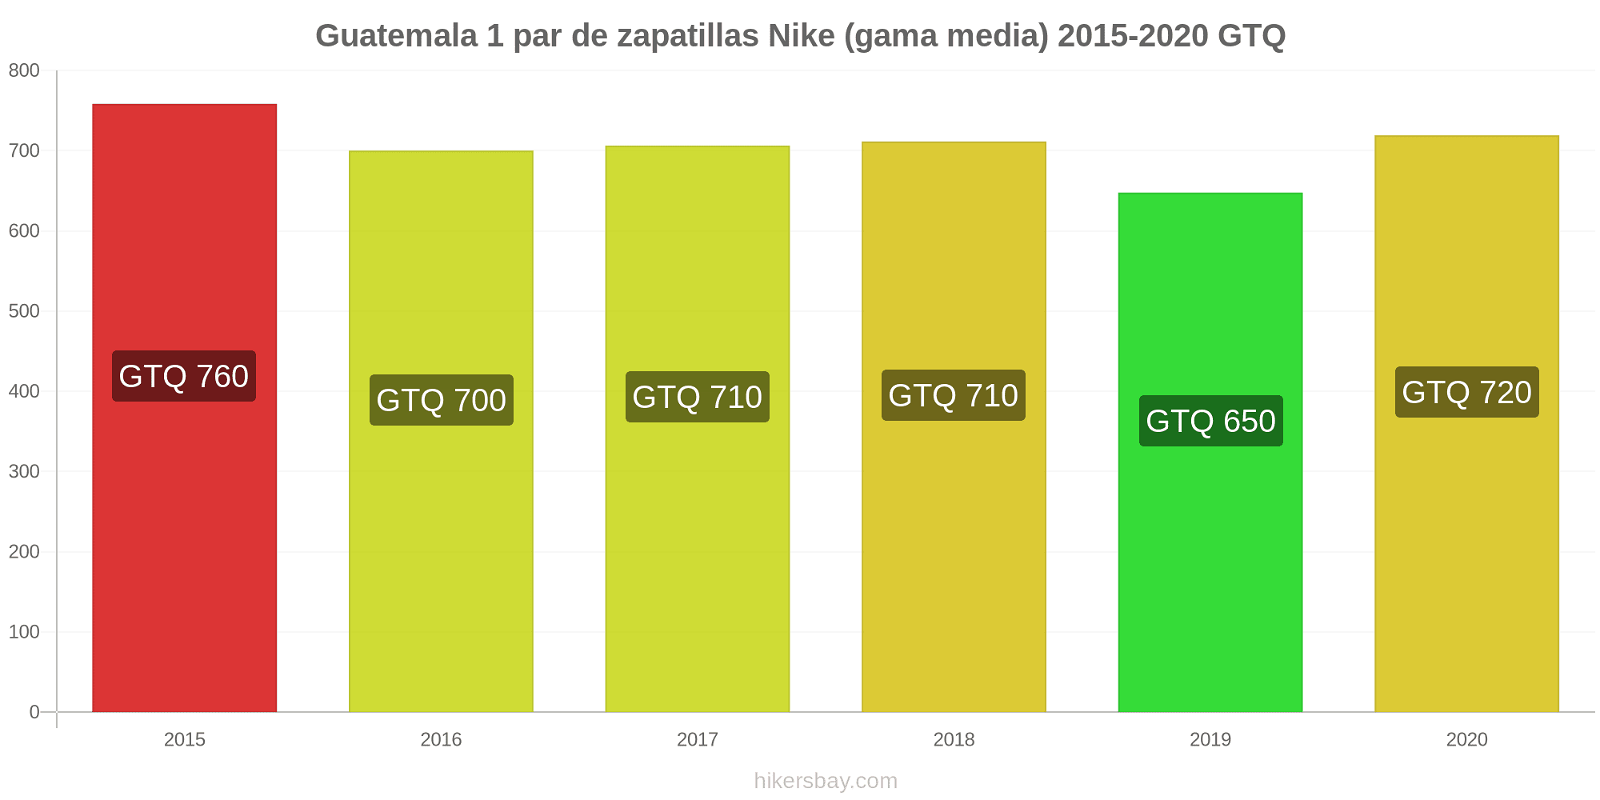 Guatemala cambios de precios 1 par de zapatillas Nike (gama media) hikersbay.com